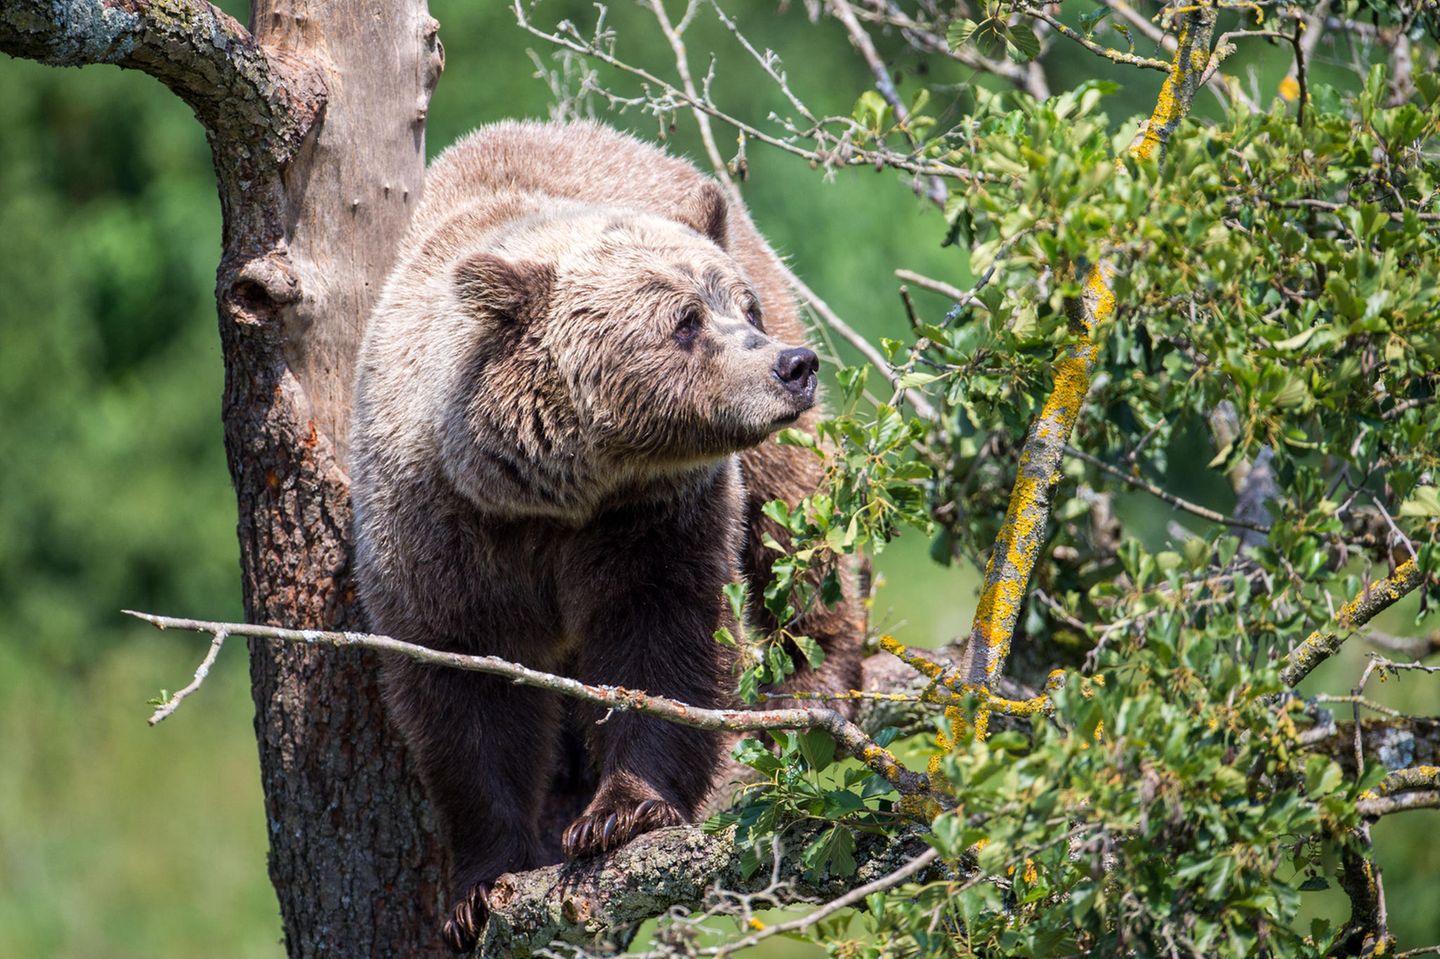 Braunbär im Wildpark Poing, Bayern: Nach dem Nachweis eines Braunbären im Landkreis Traunstein (Bayern) mit Hilfe einer Wildkamera hat sich der dortige Landrat ablehnend zu dem Tier geäußert